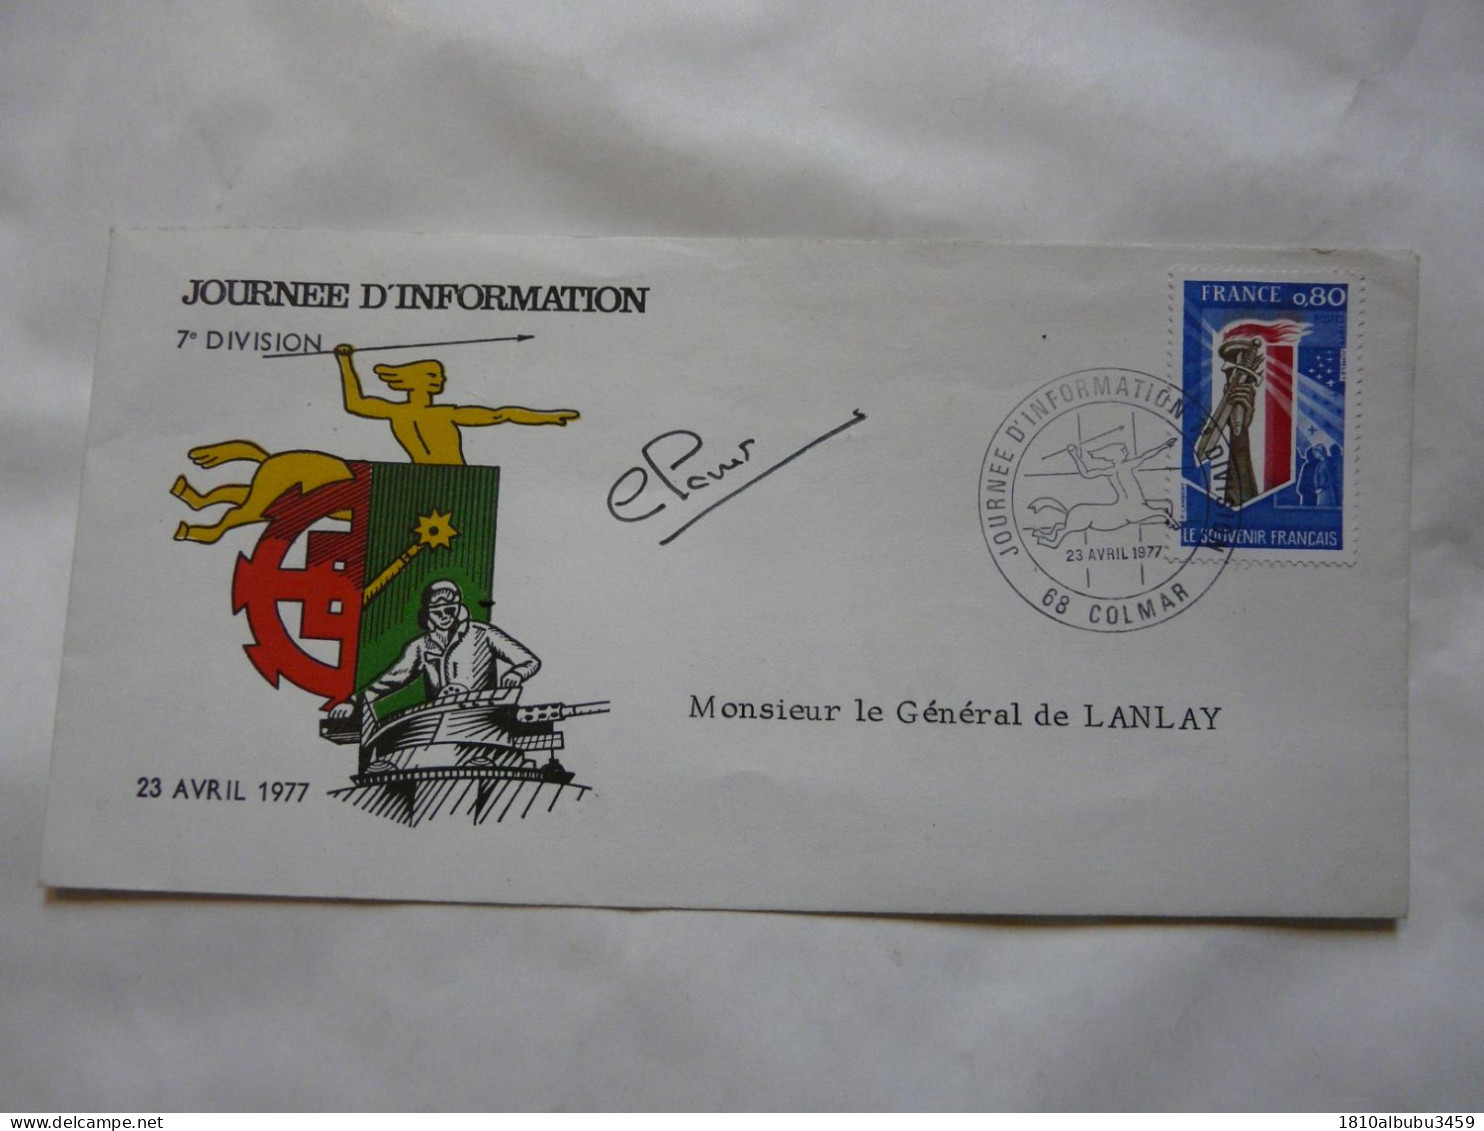 JOURNEE D'INFORMATION 7e DIVISION - Monsieur Le Général De LANLAY 1977 - Stamp's Day